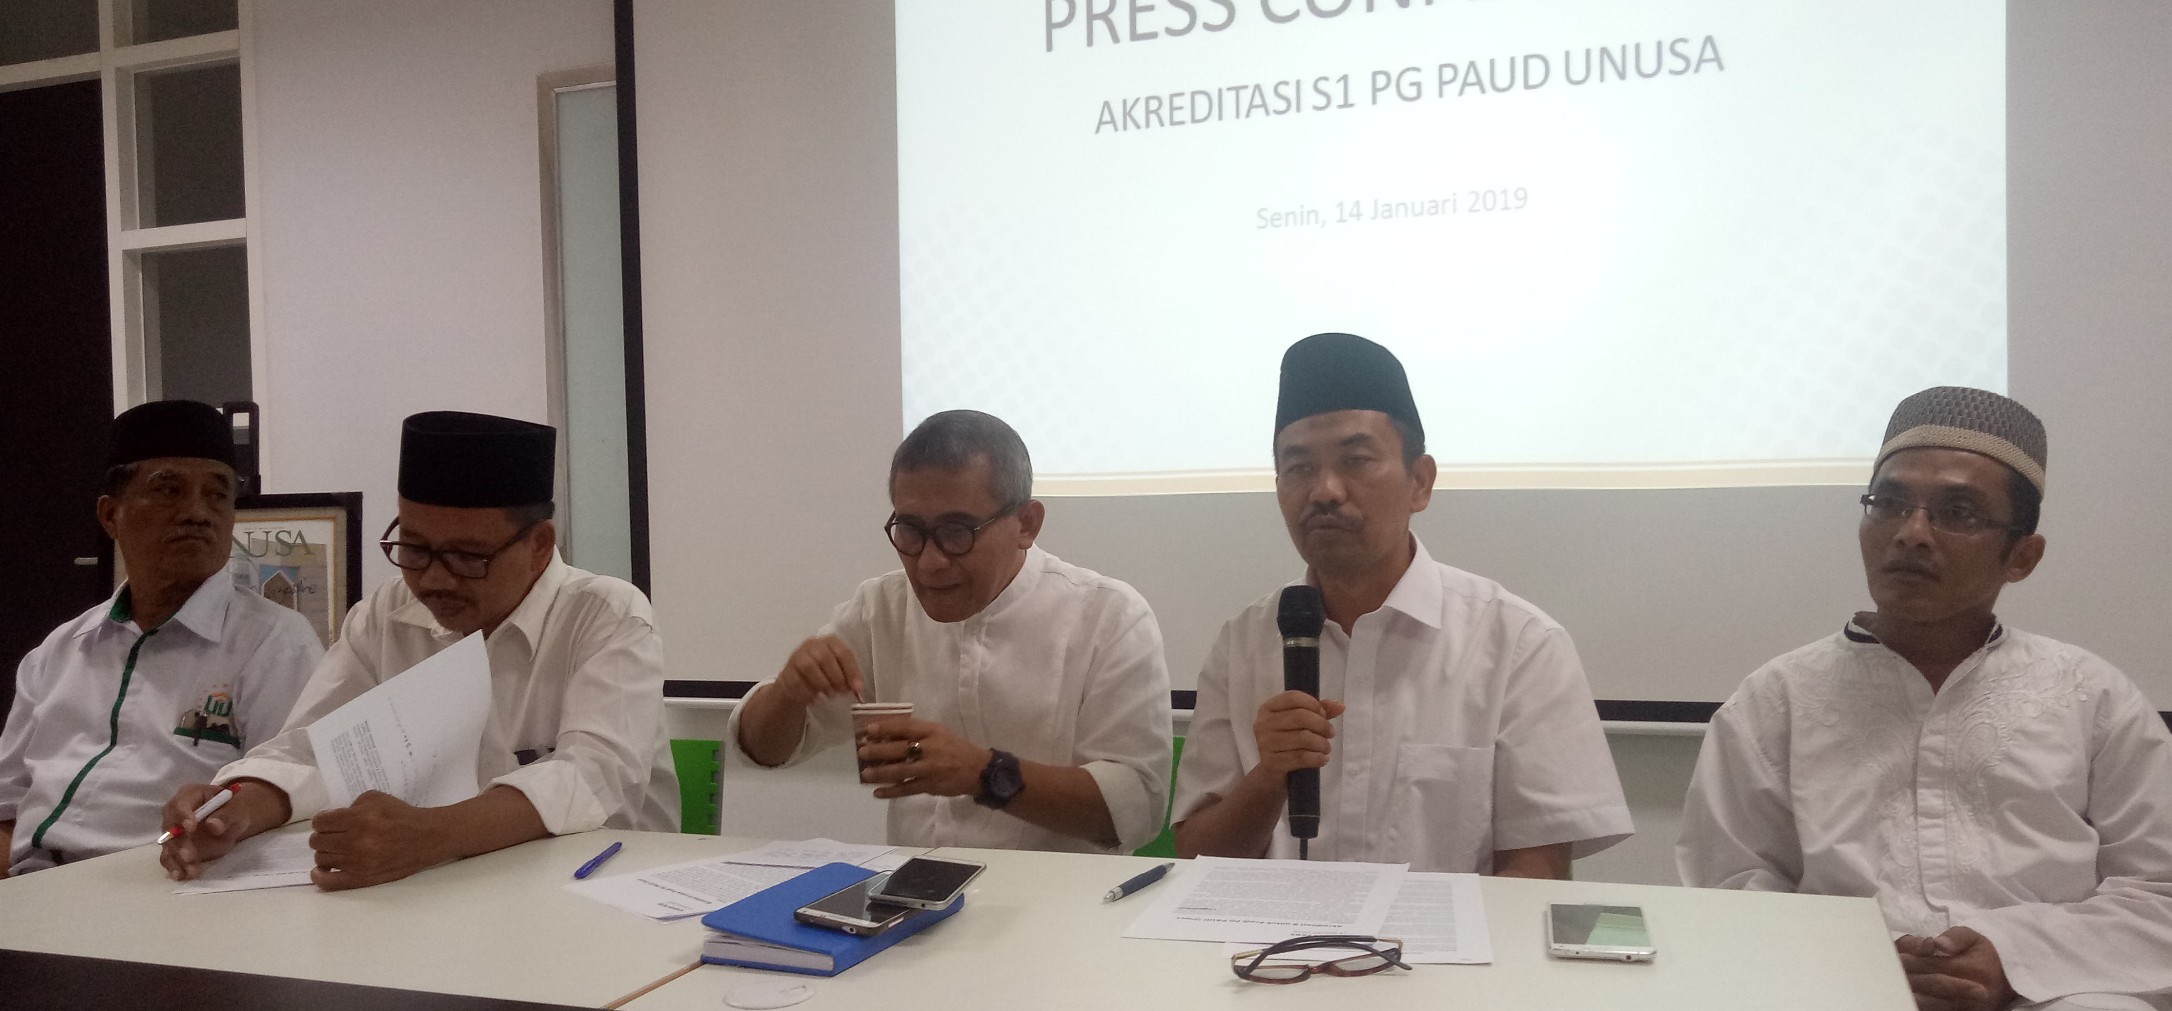 Prof. Achmad Jazidie dan Prof Kacung Marijan bersama jajaranya saat menceritakan tentang PPG di Unusa